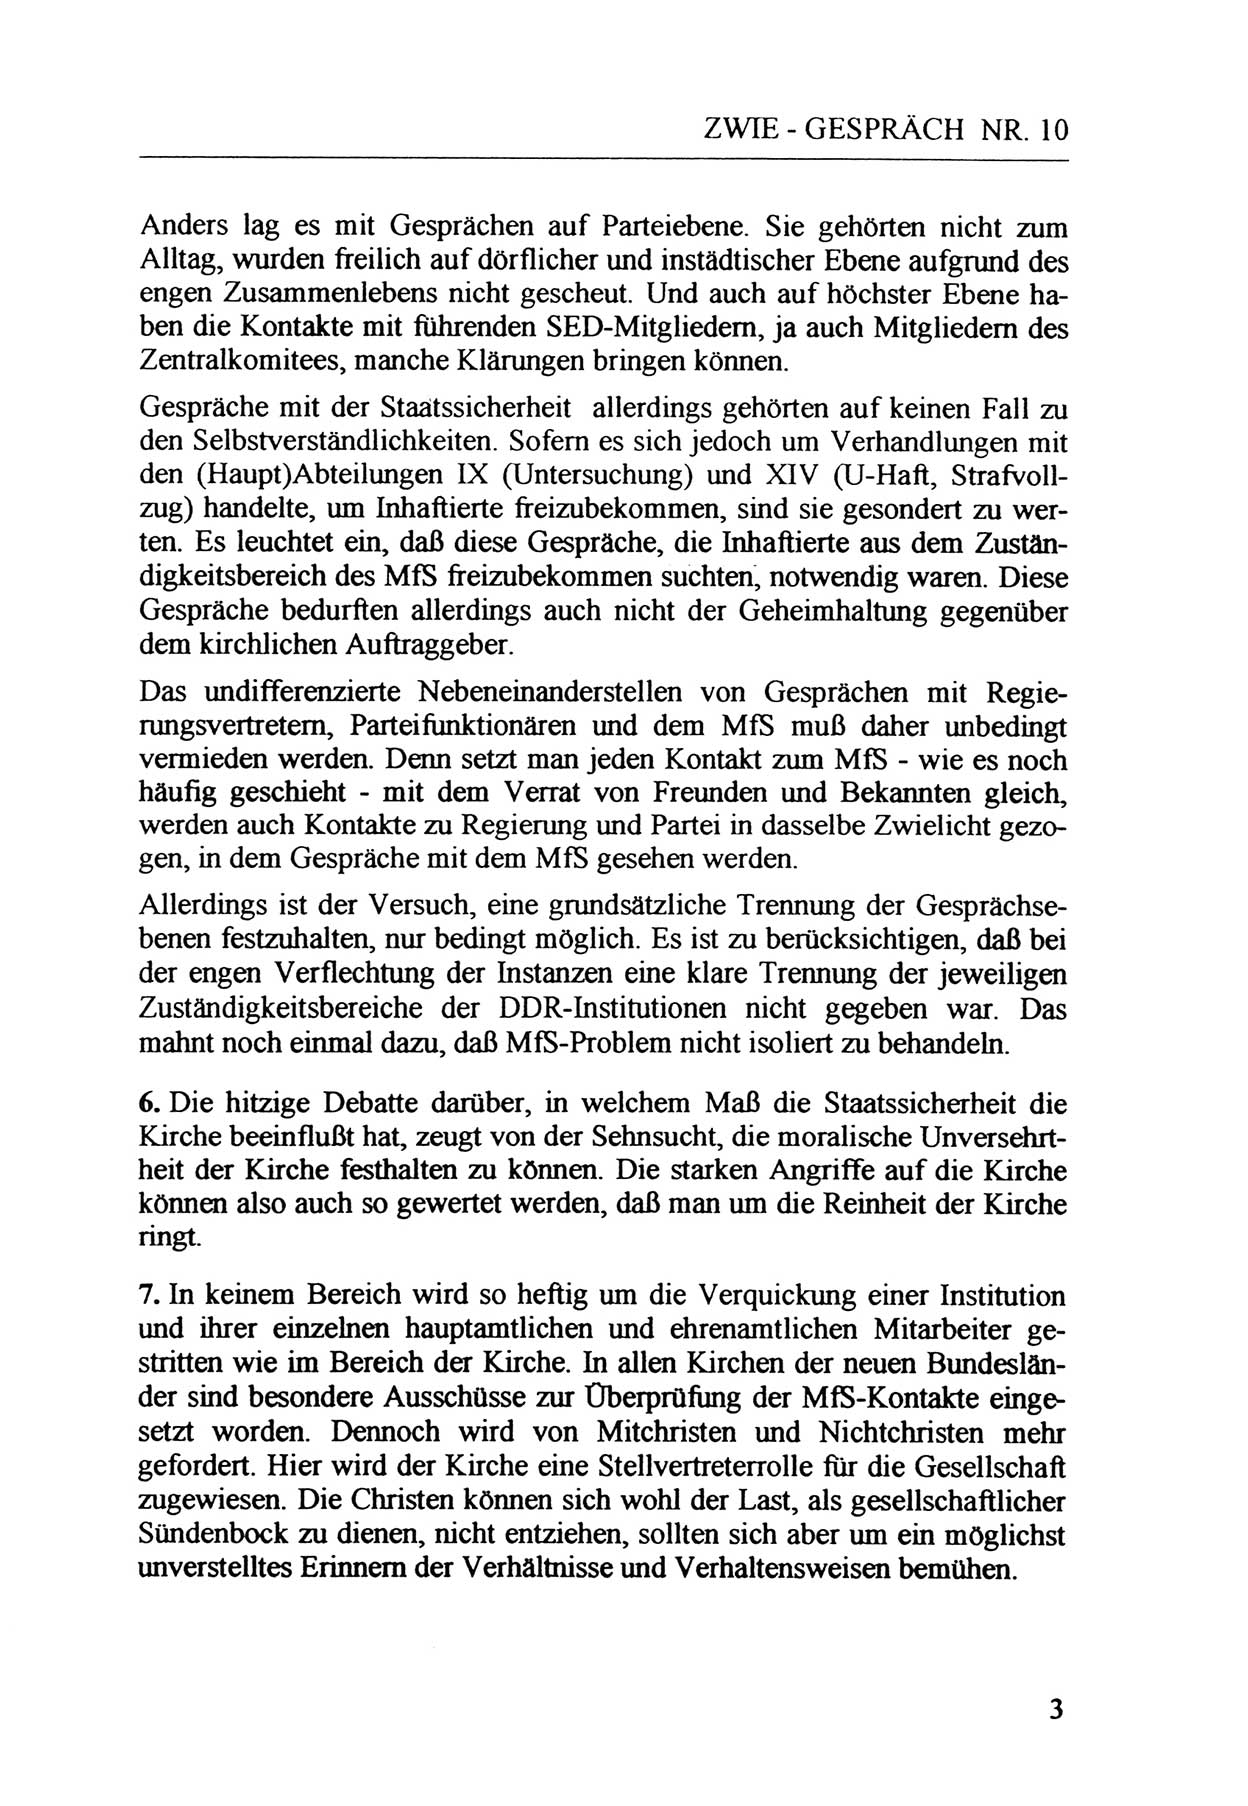 Zwie-Gespräch, Beiträge zur Aufarbeitung der Staatssicherheits-Vergangenheit [Deutsche Demokratische Republik (DDR)], Ausgabe Nr. 10, Berlin 1992, Seite 3 (Zwie-Gespr. Ausg. 10 1992, S. 3)